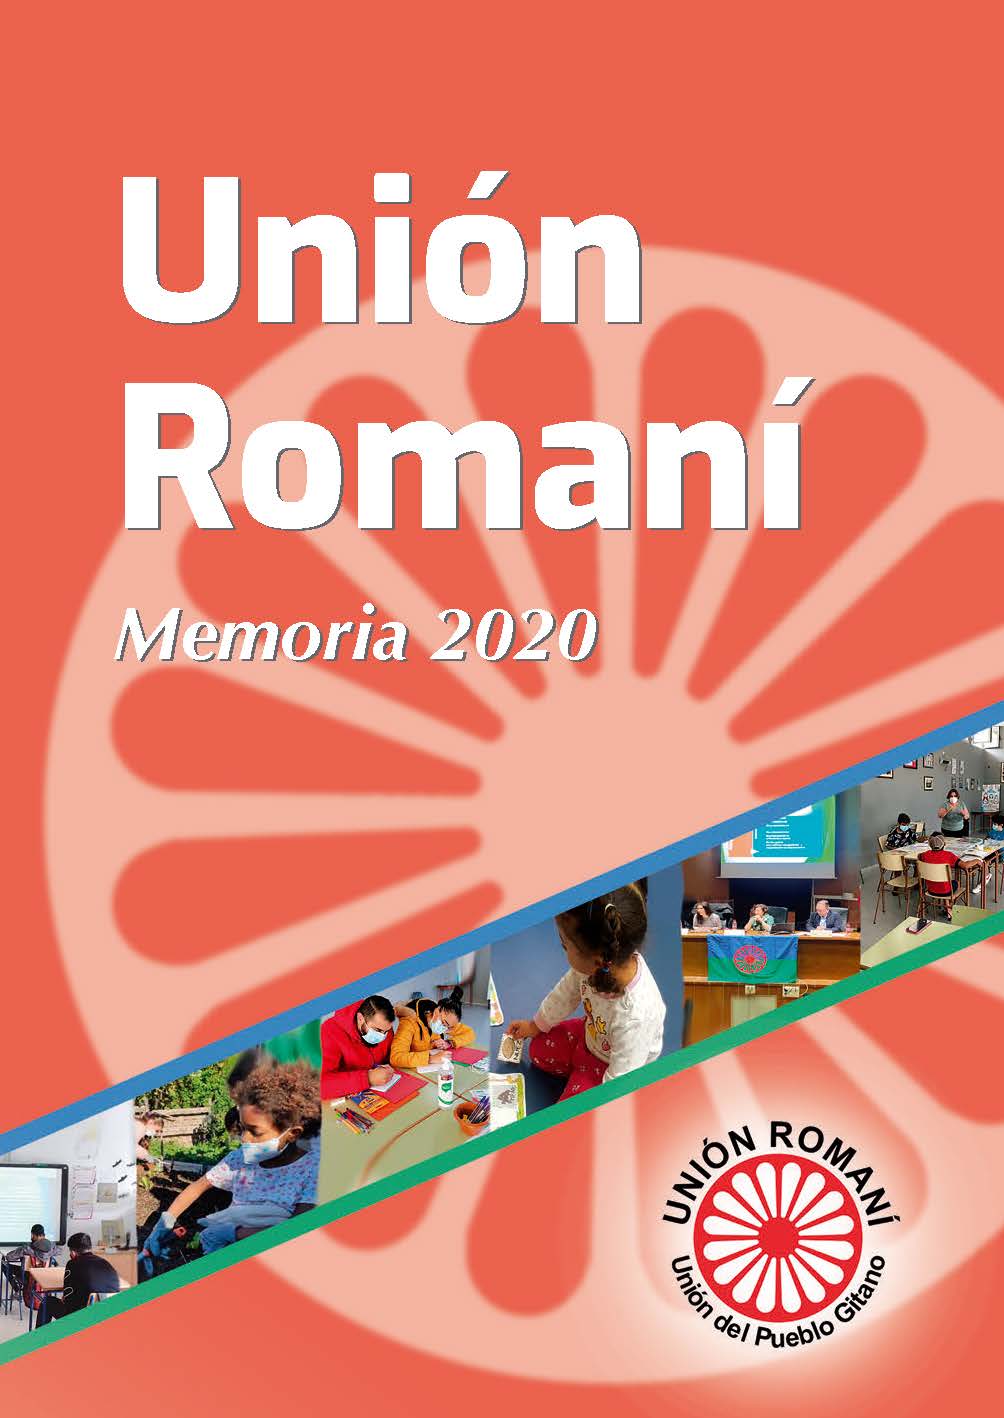 La memoria de Unión Romaní.